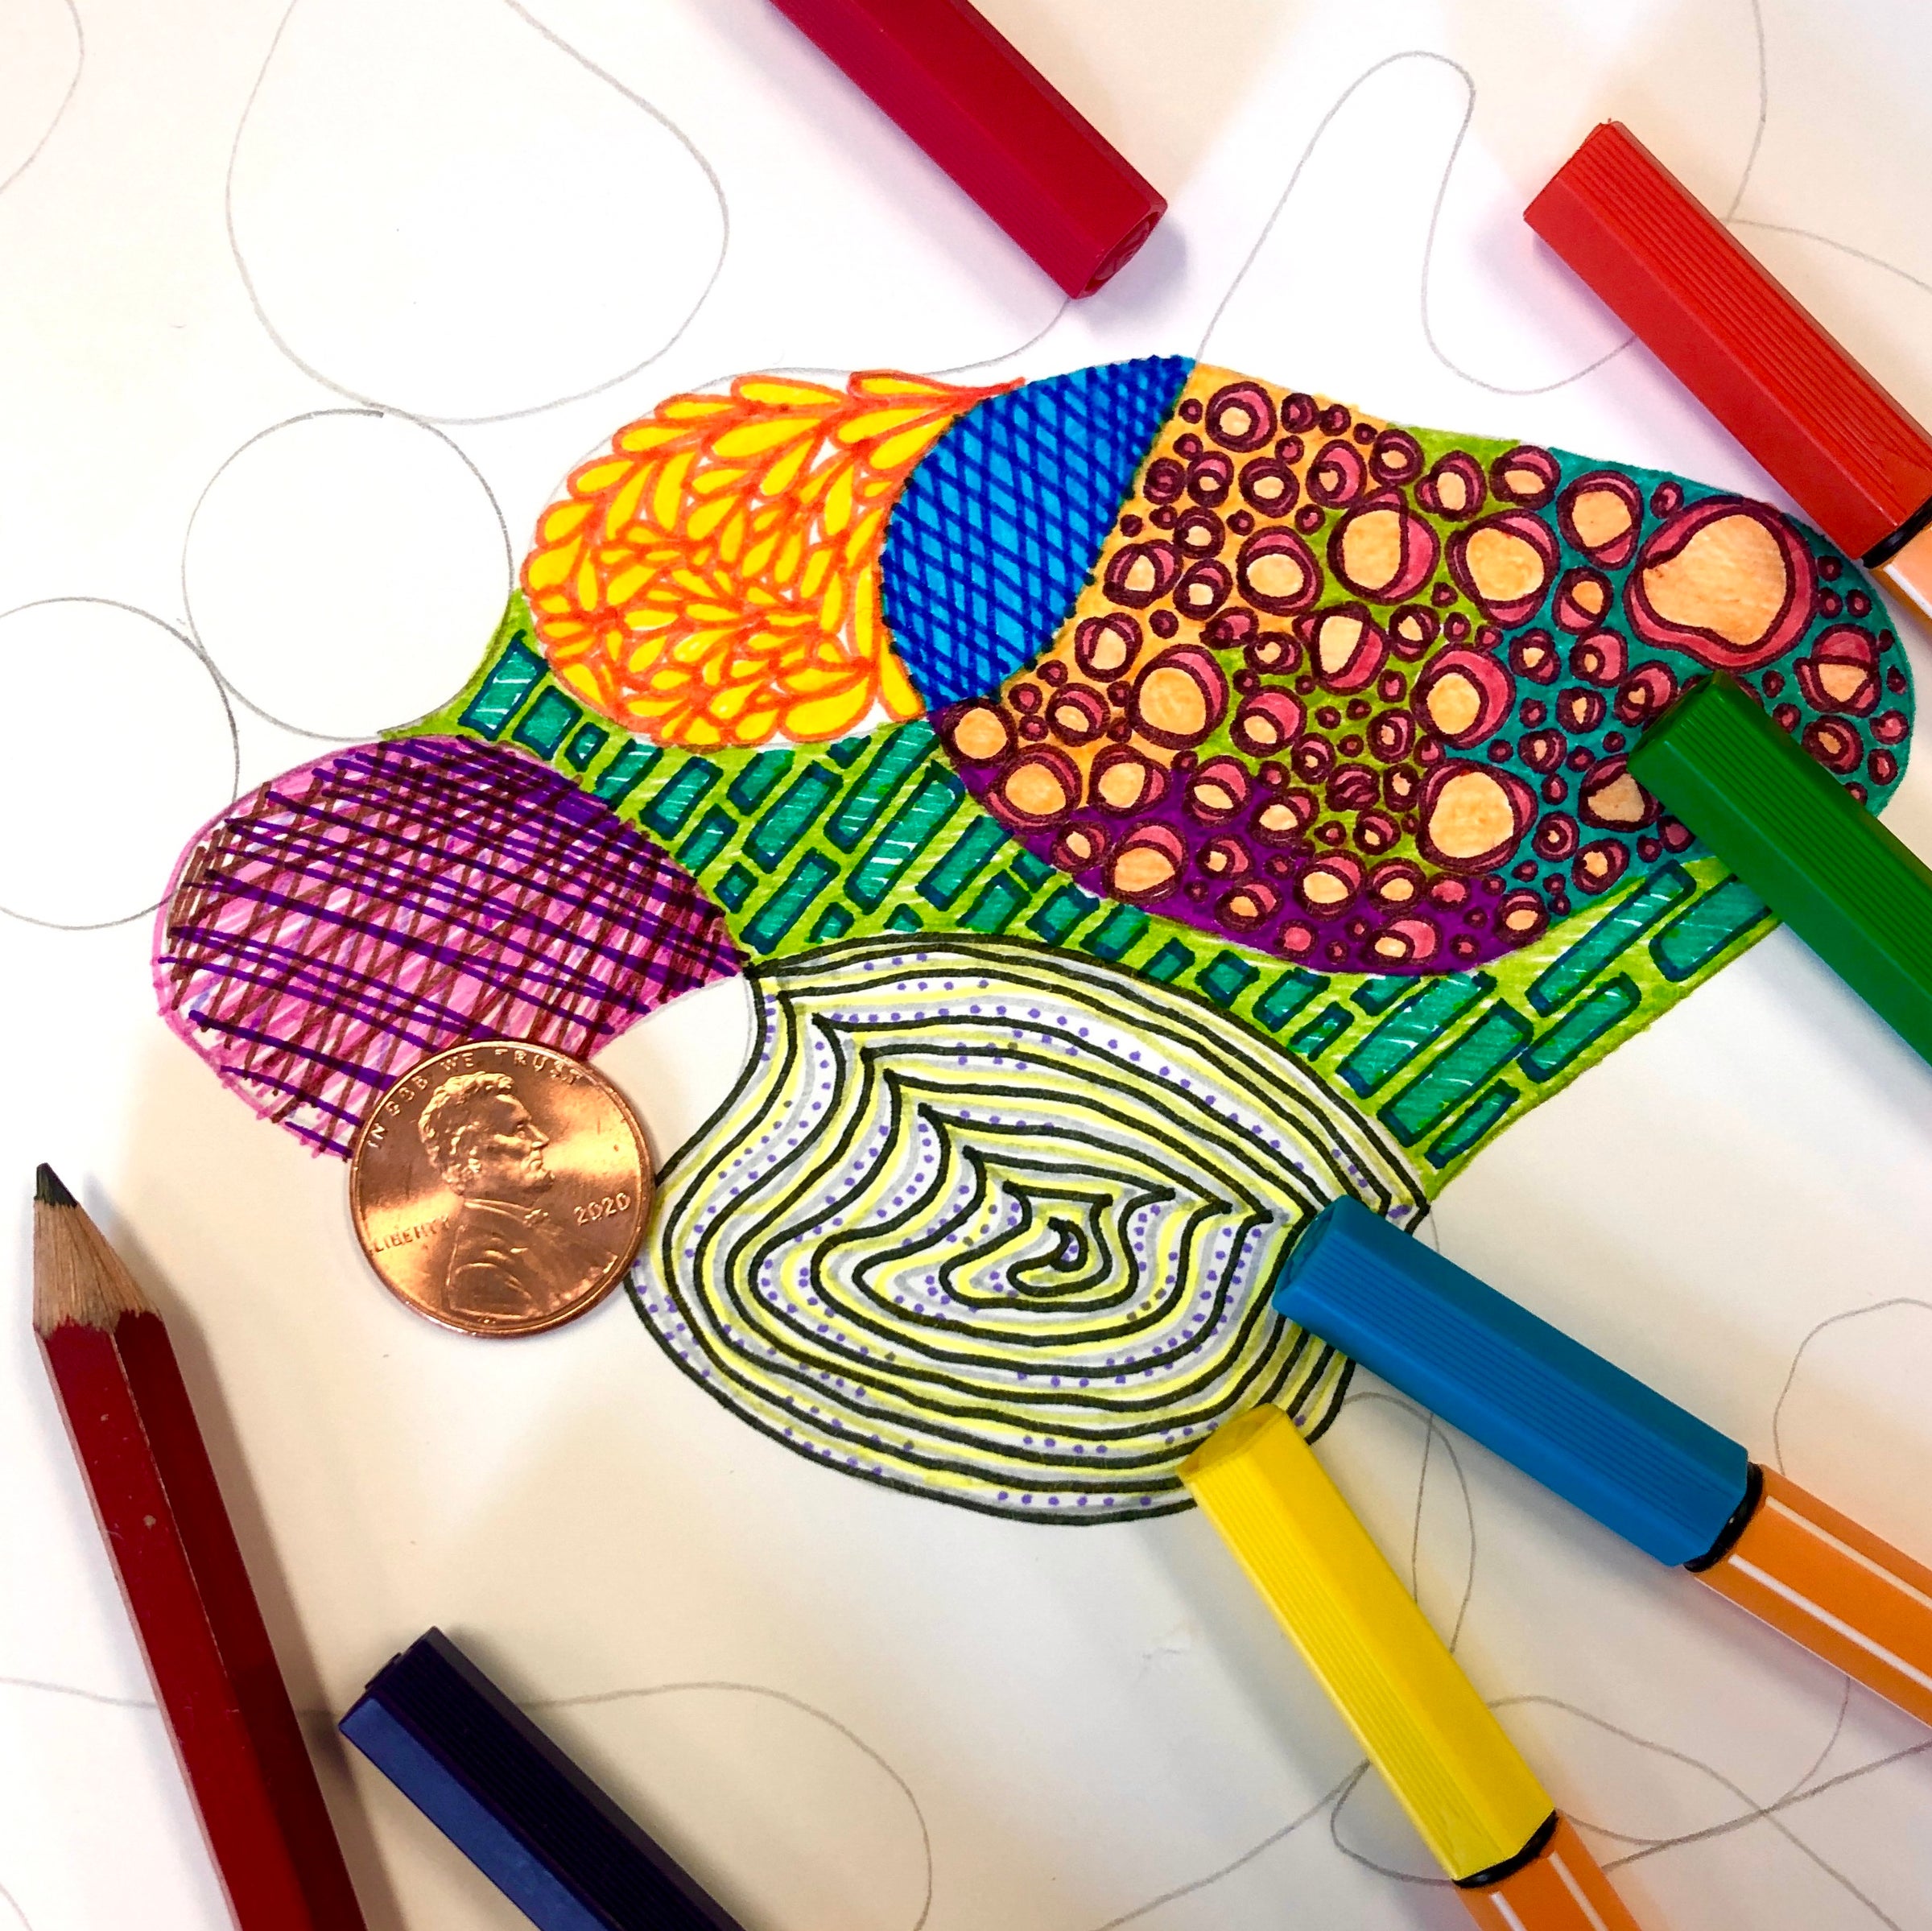 COPIC Ciao Doodle Kits at New River Art & Fiber